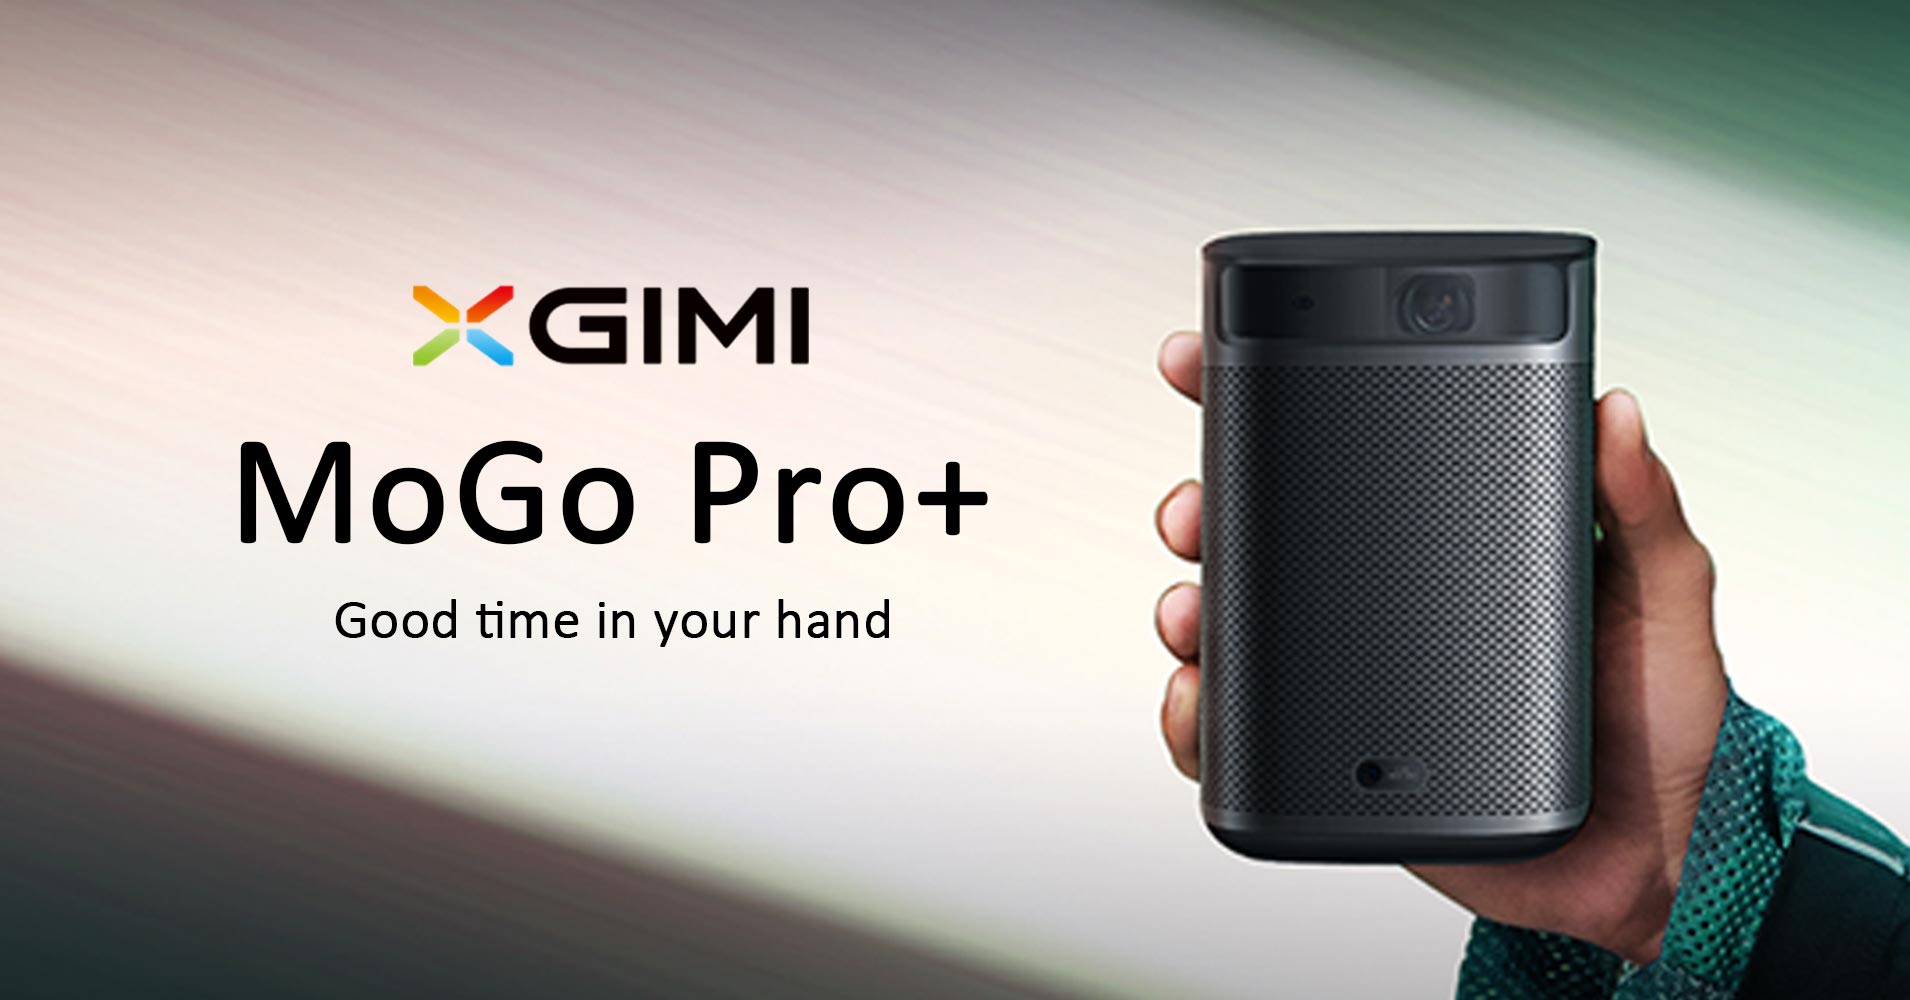 XGIMIモバイルプロジェクター「MoGo Pro+」を2020年11月25日(水) 14時 